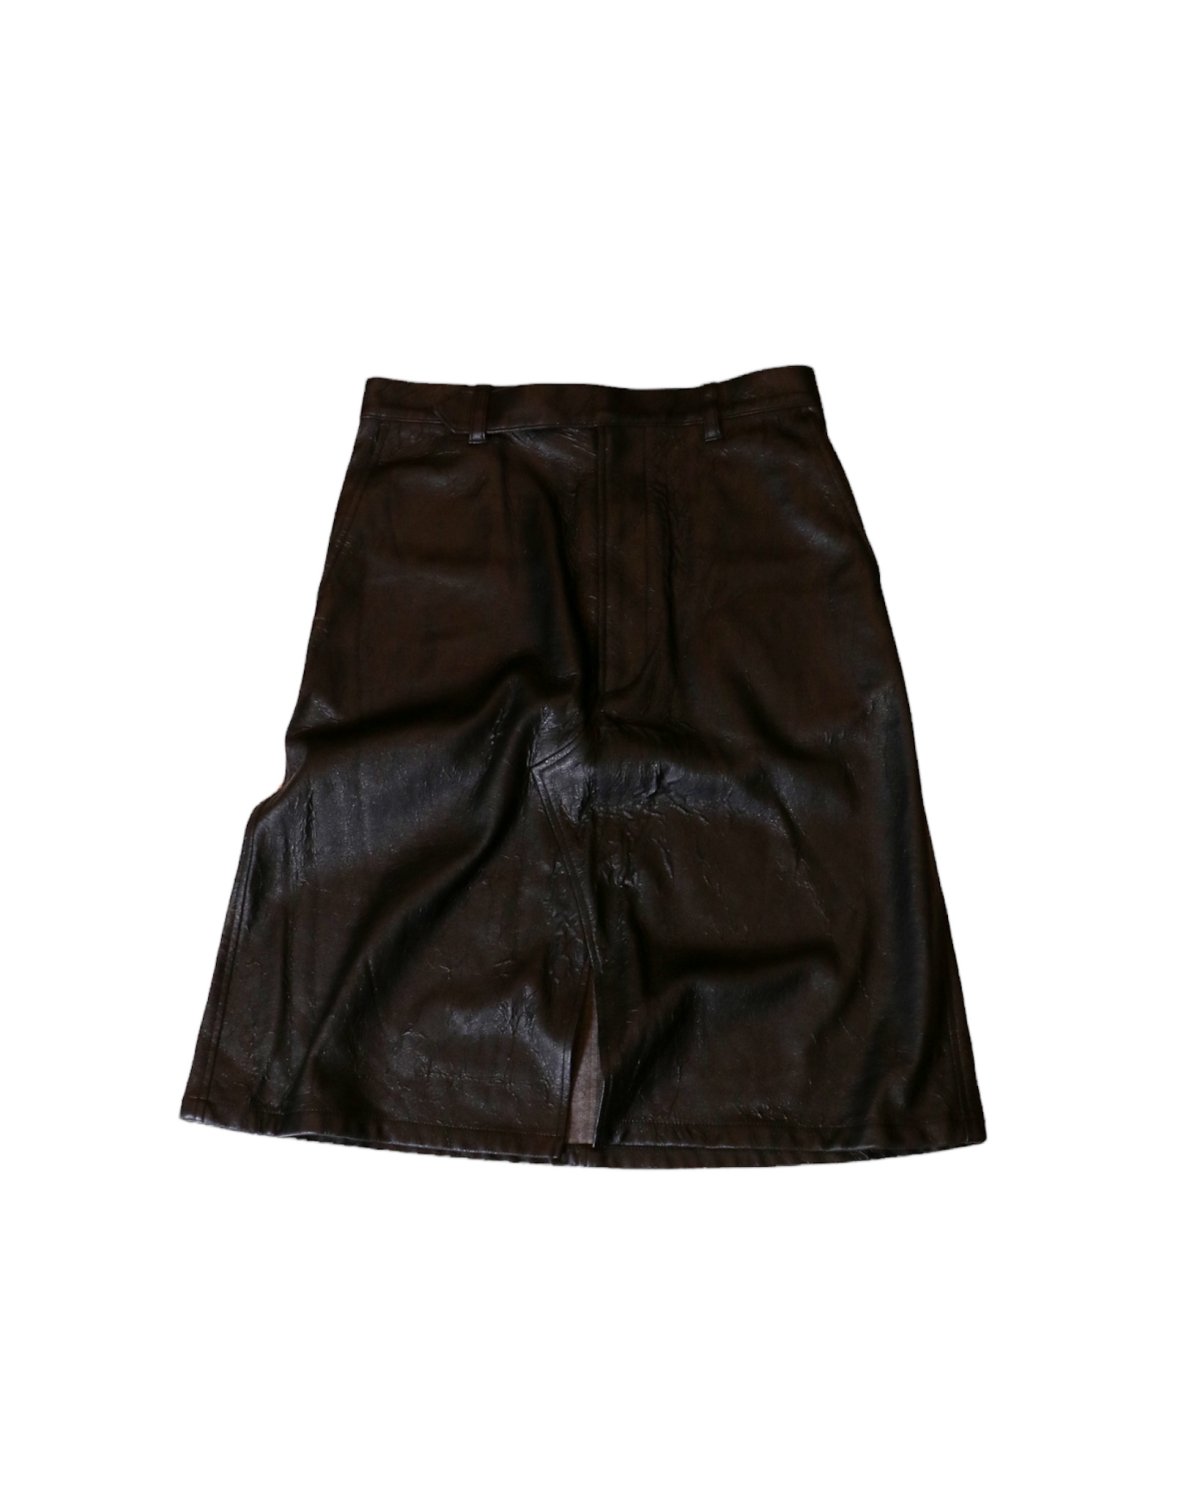 I&I 古着 通販 “G.V.G.V” 4 Pockets Fake Leather Skirt  詳細画像